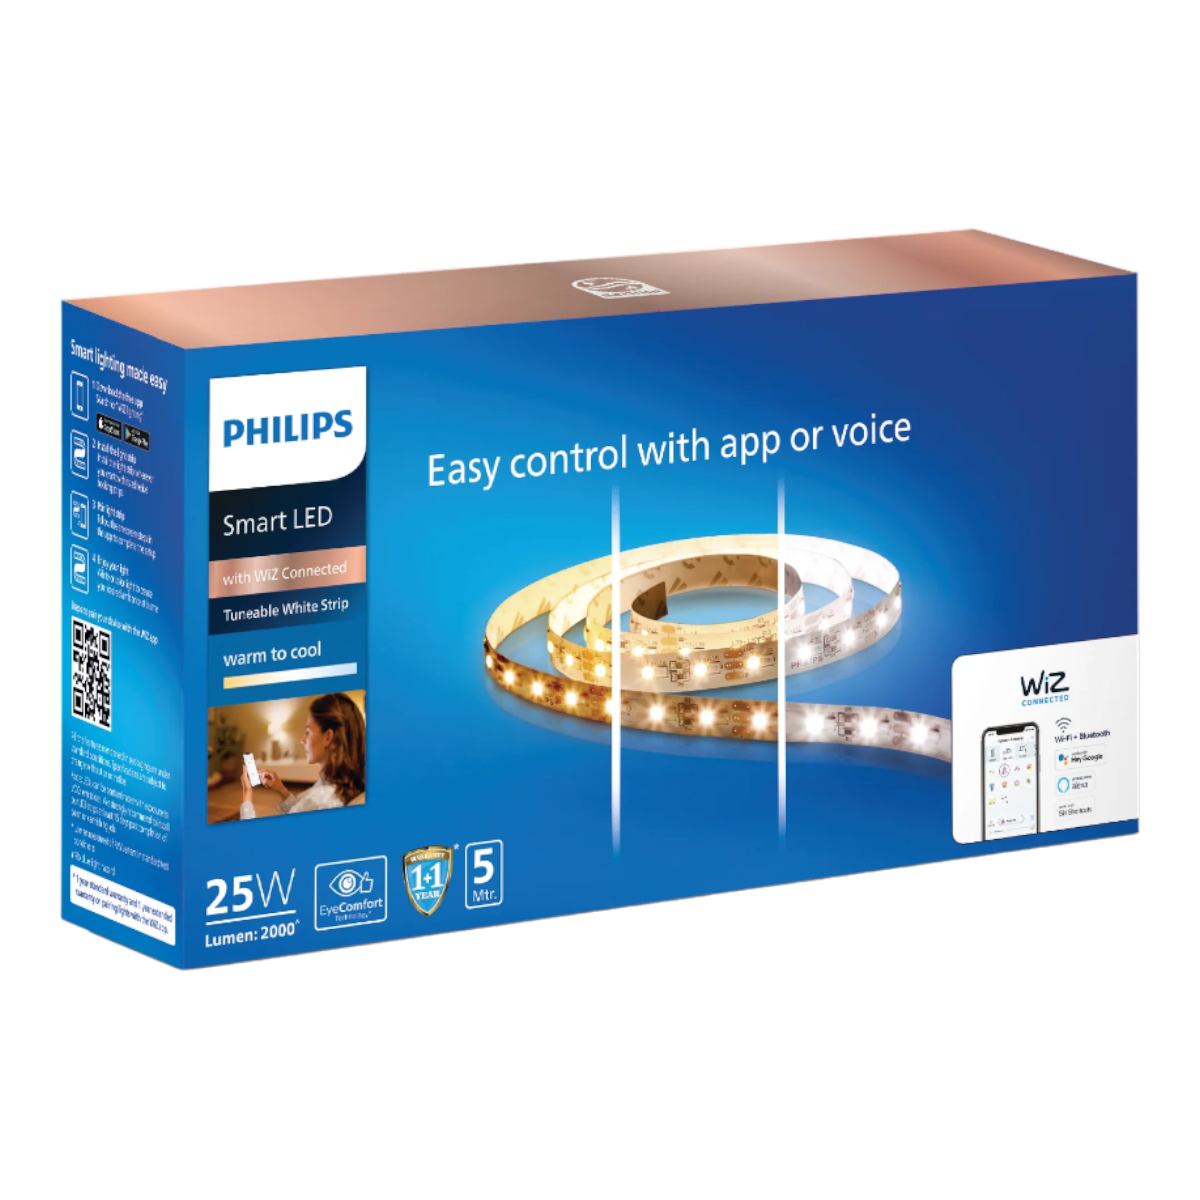 lighting – light | Strip Smart Philips LED Philips Store WiFi Buy Philips Online lighting